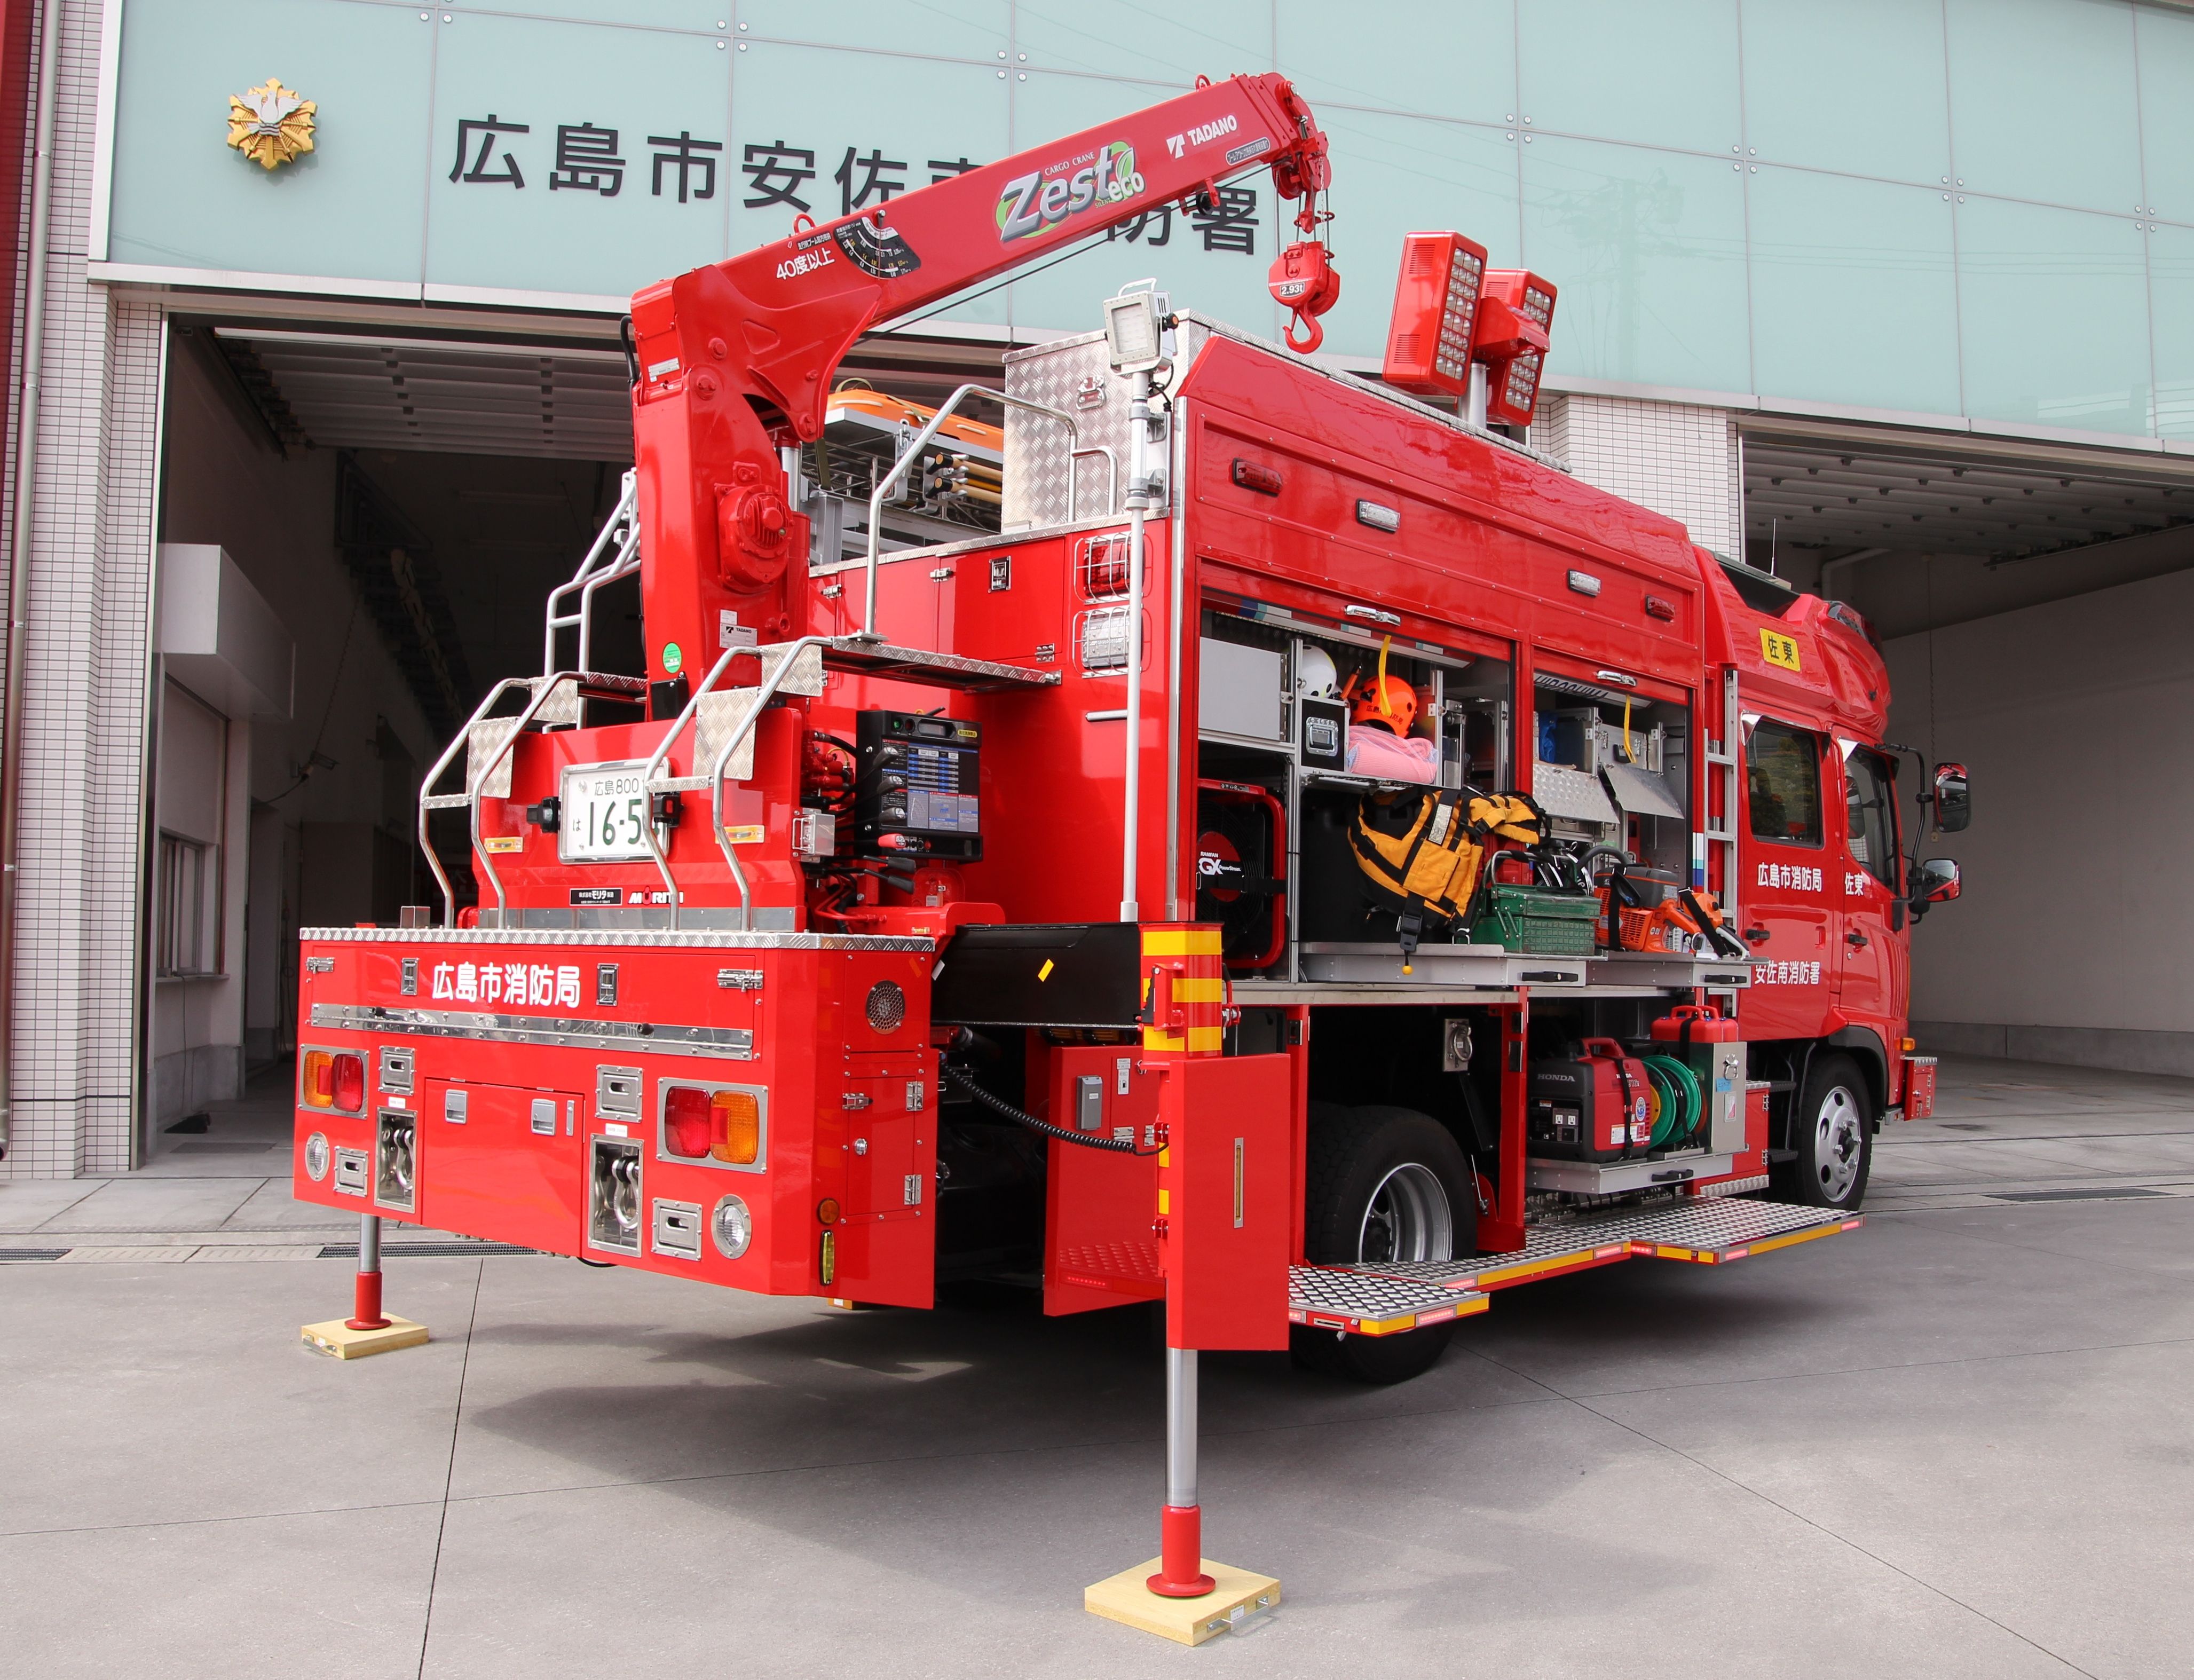 広島市消防局の消防車両 広島市公式ホームページ